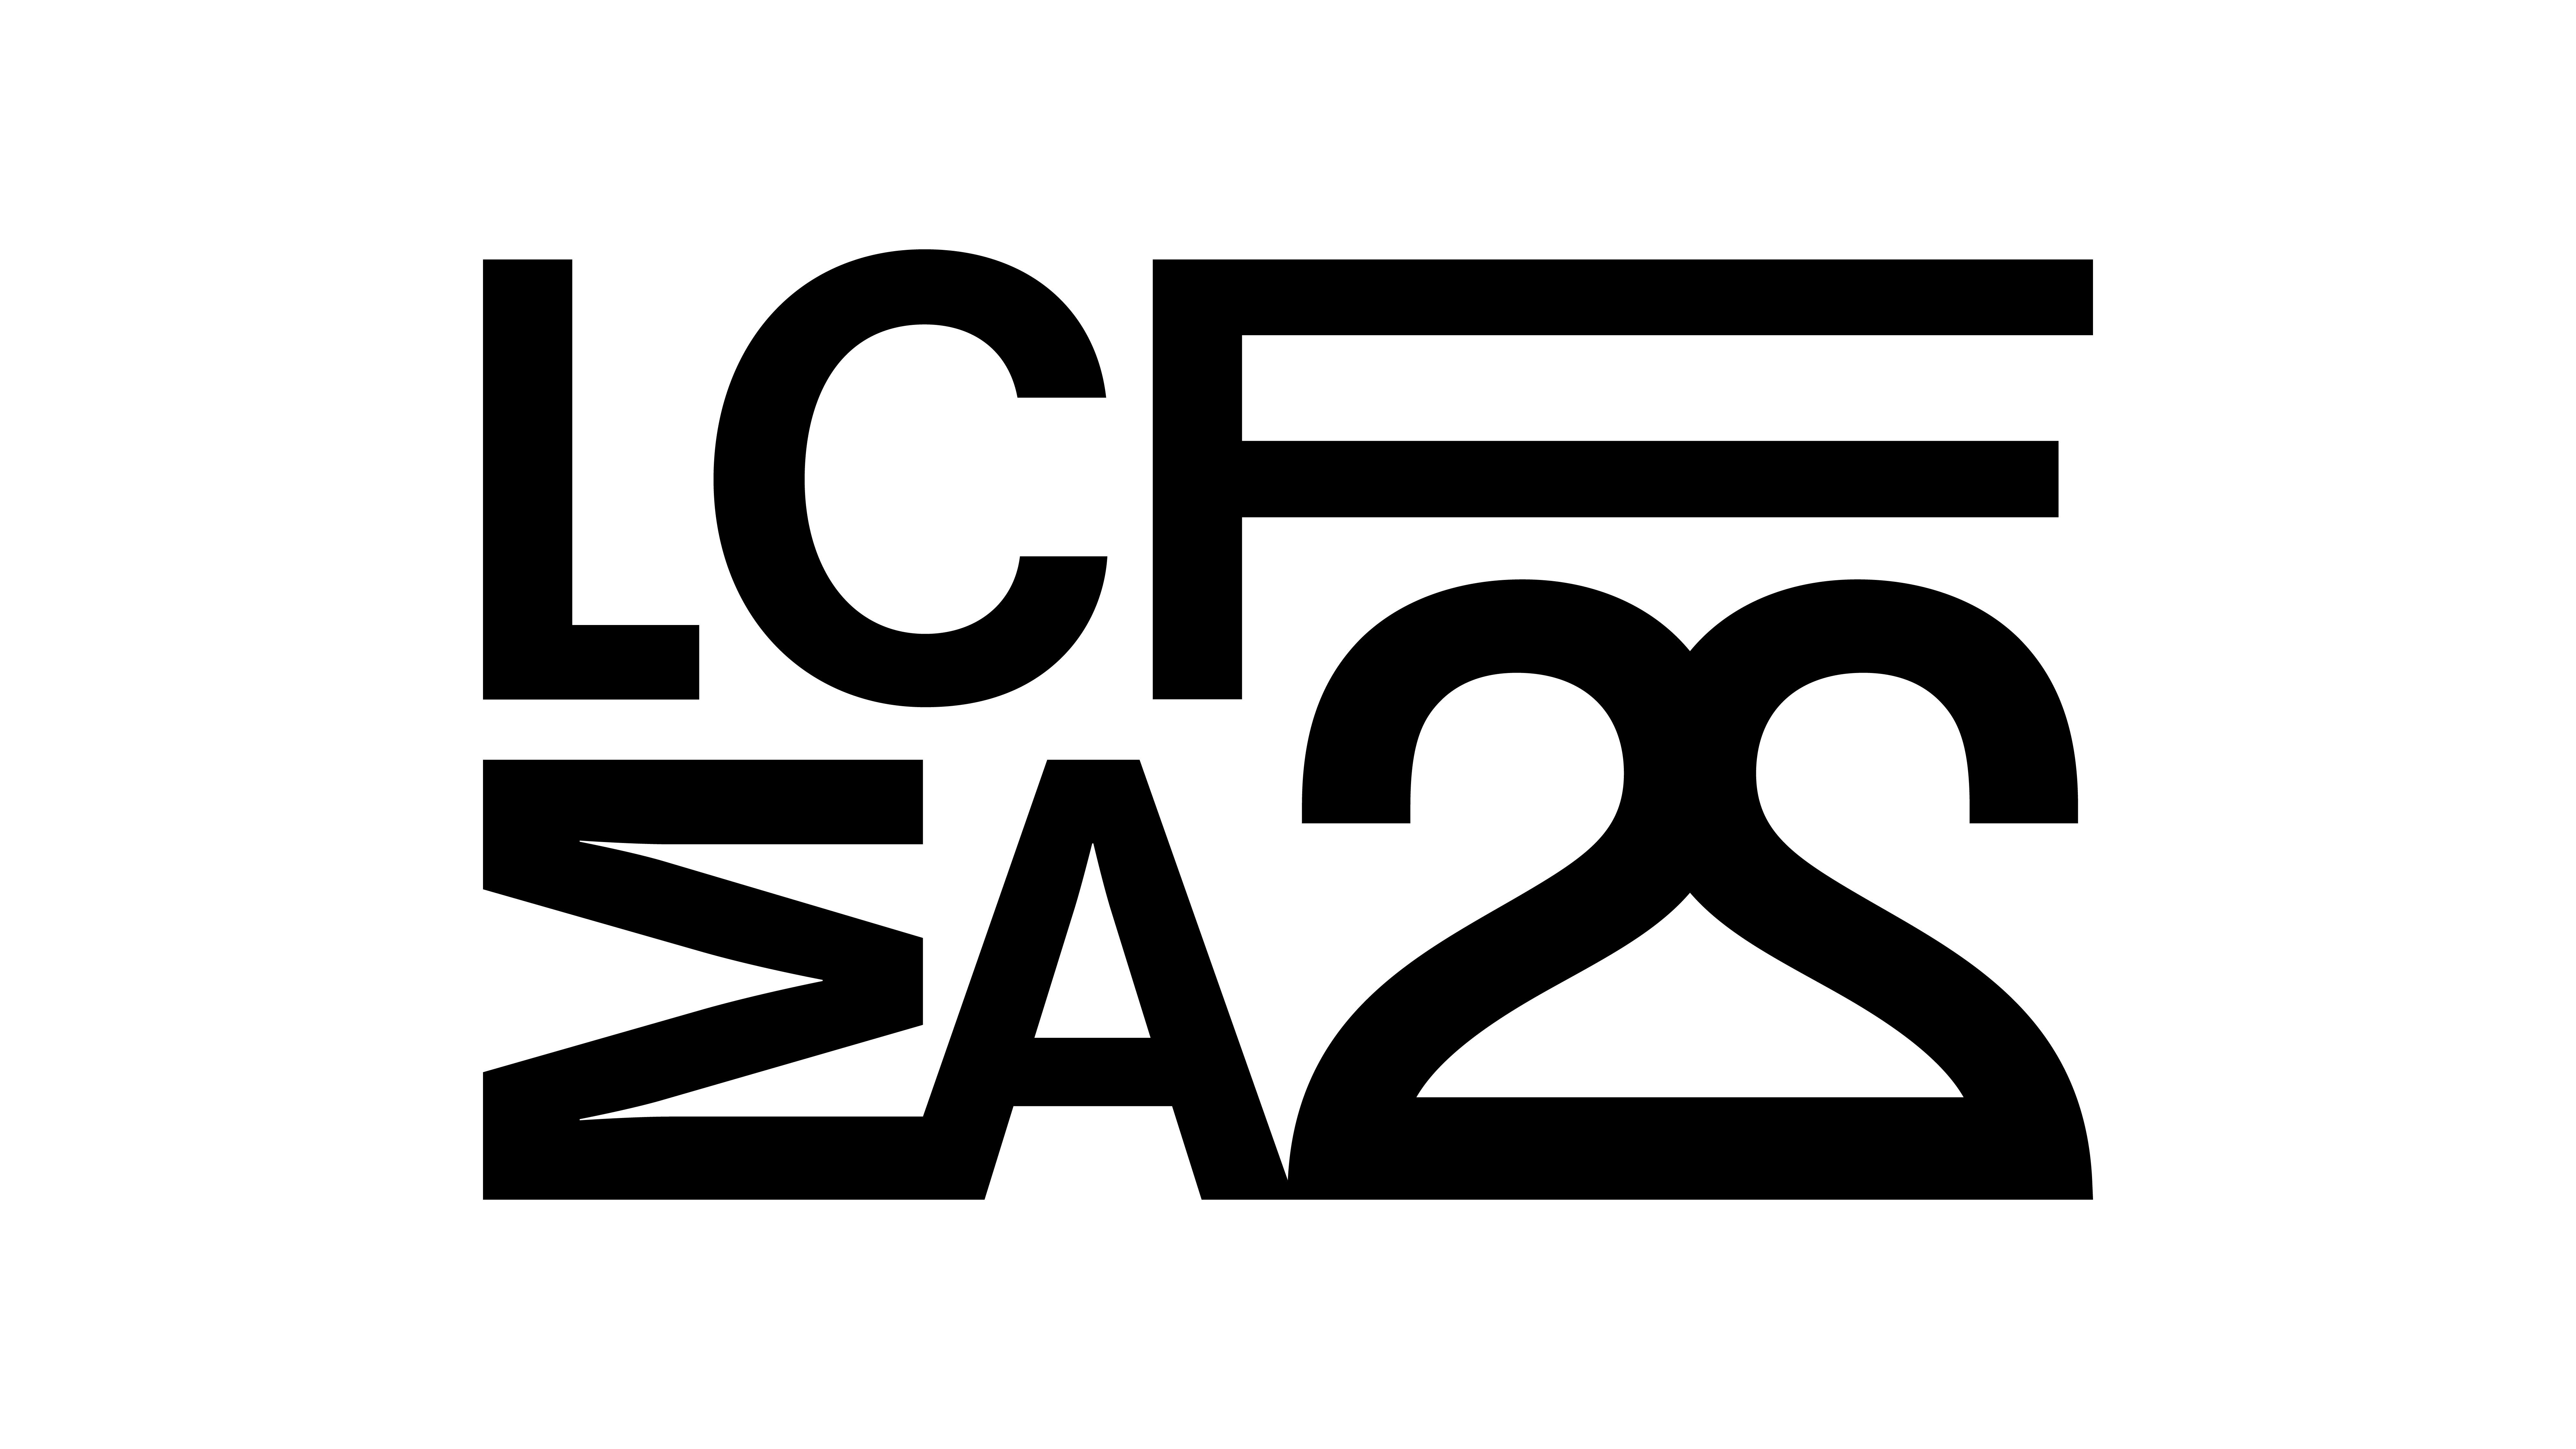 black and white logo 'LCFMA22'